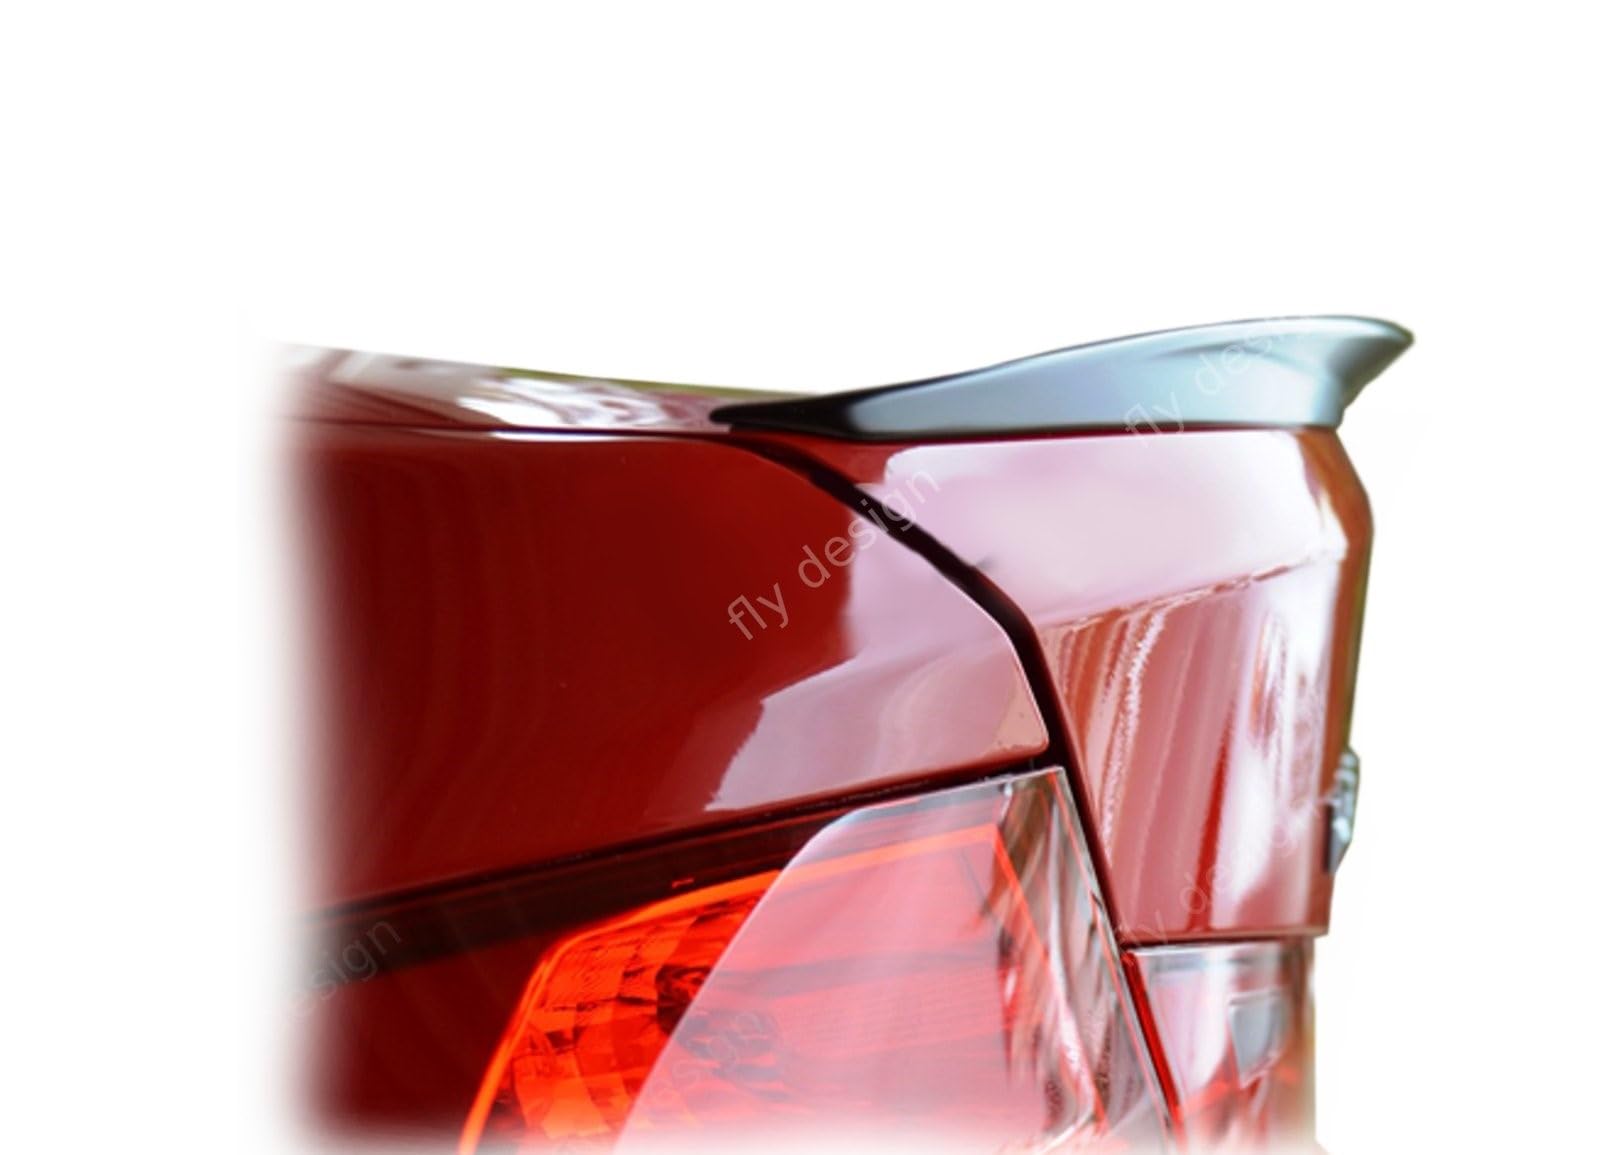 FLY DESIGN 70115 Heckspoiler passend für BMW F30 3er Limo, Heckflügel, Spoilerlippe für Auto-Tuning, in P-Still, ABS Kunststoff, Saphirschwarz 475 lackiert von FLY DESIGN